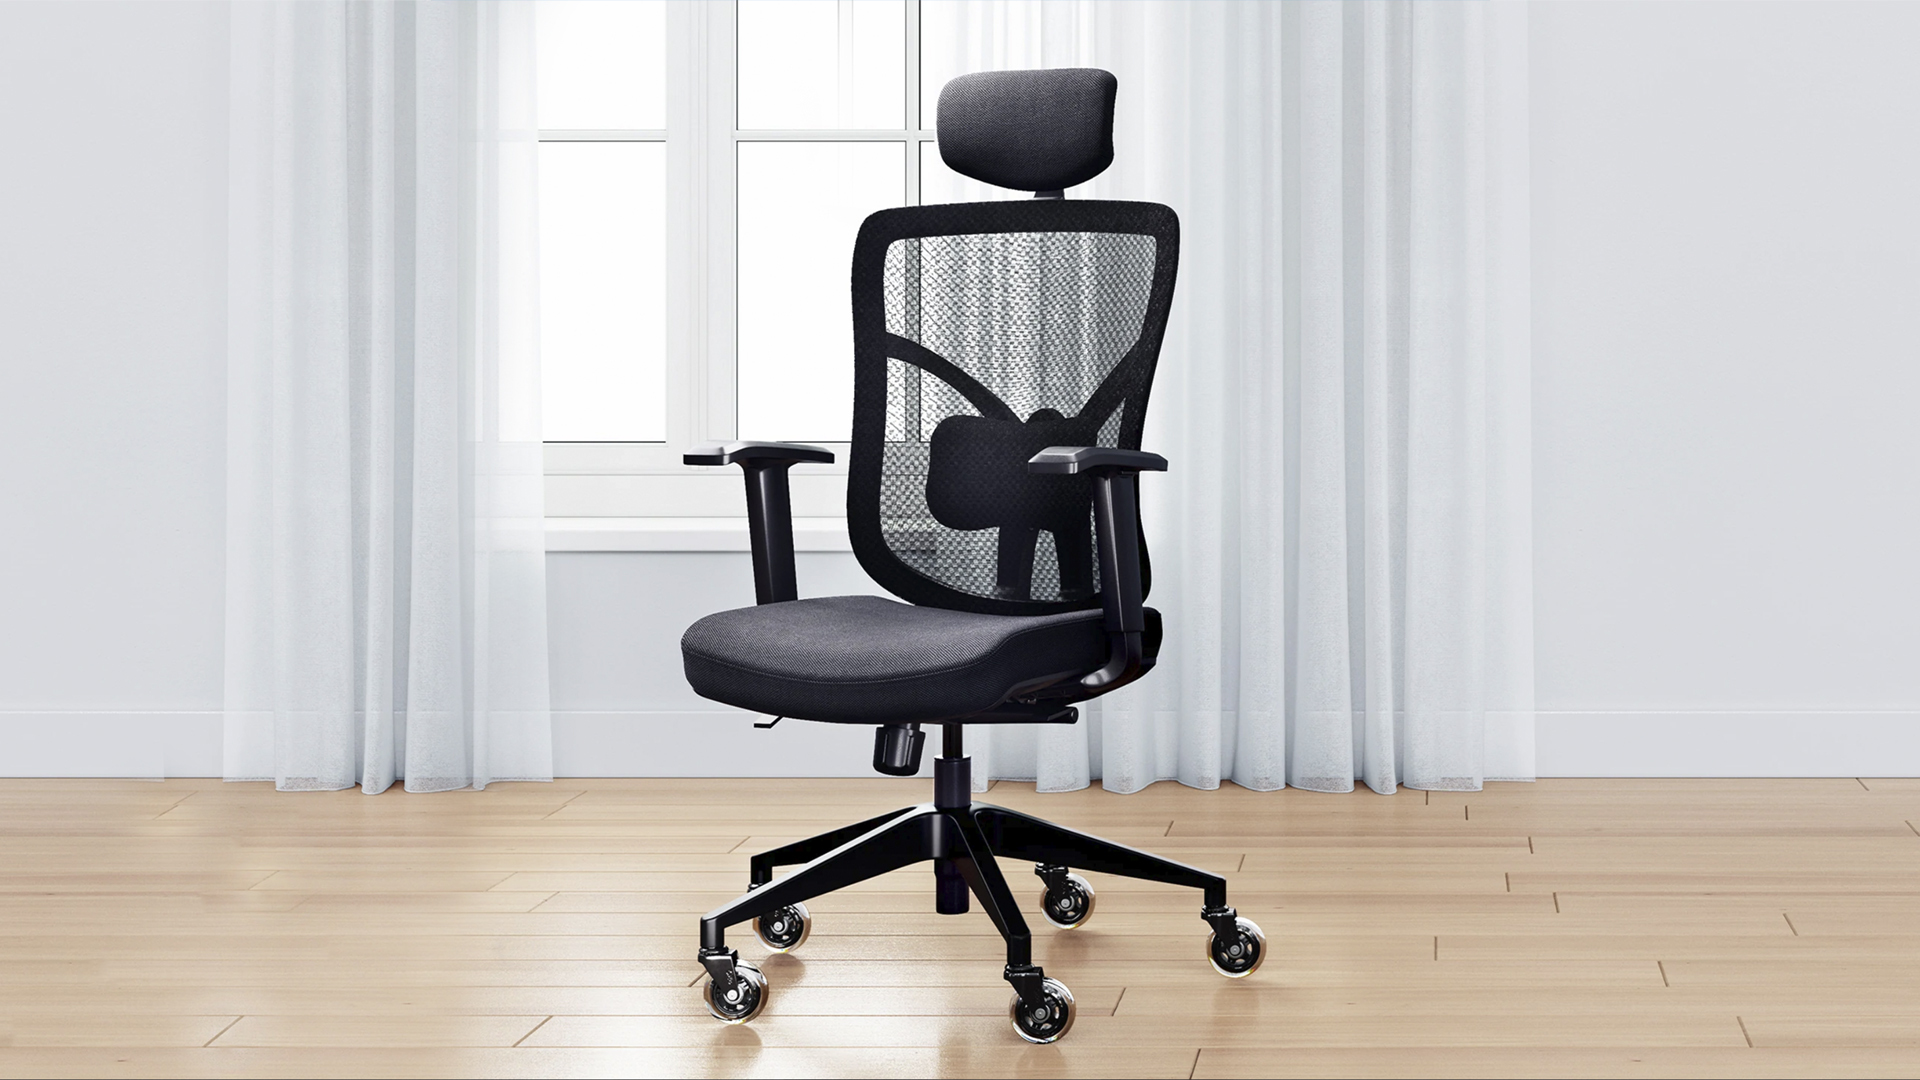 Eureka Ergonomic| Ergonomic Mesh Office Chair | Onyx, Gray